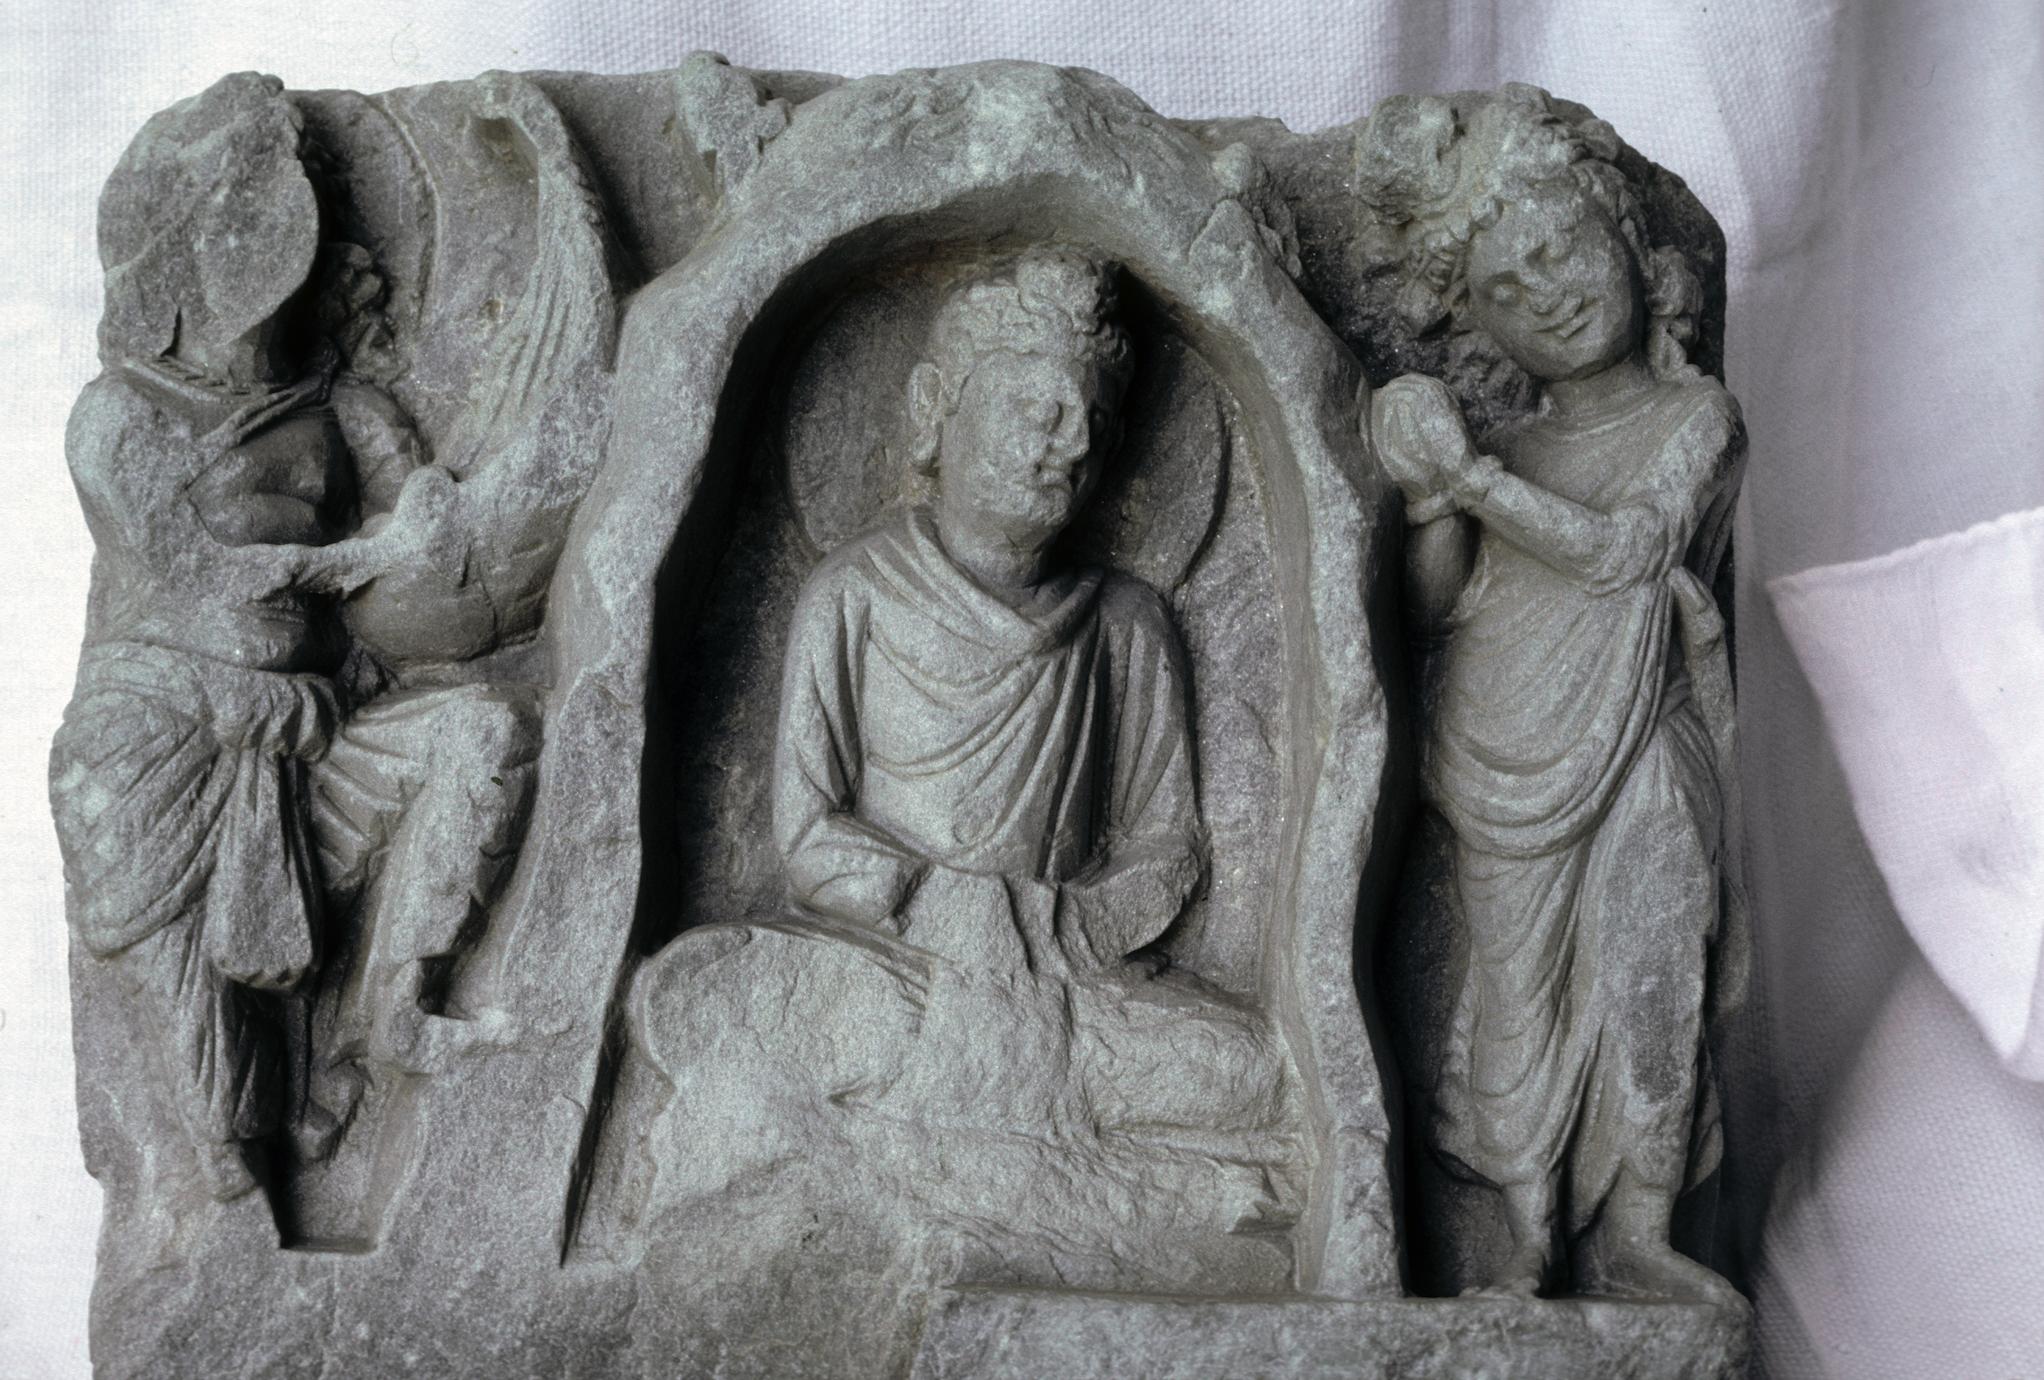 NG313, Visit of Śakra and Pañchāsikha (1 of 4)